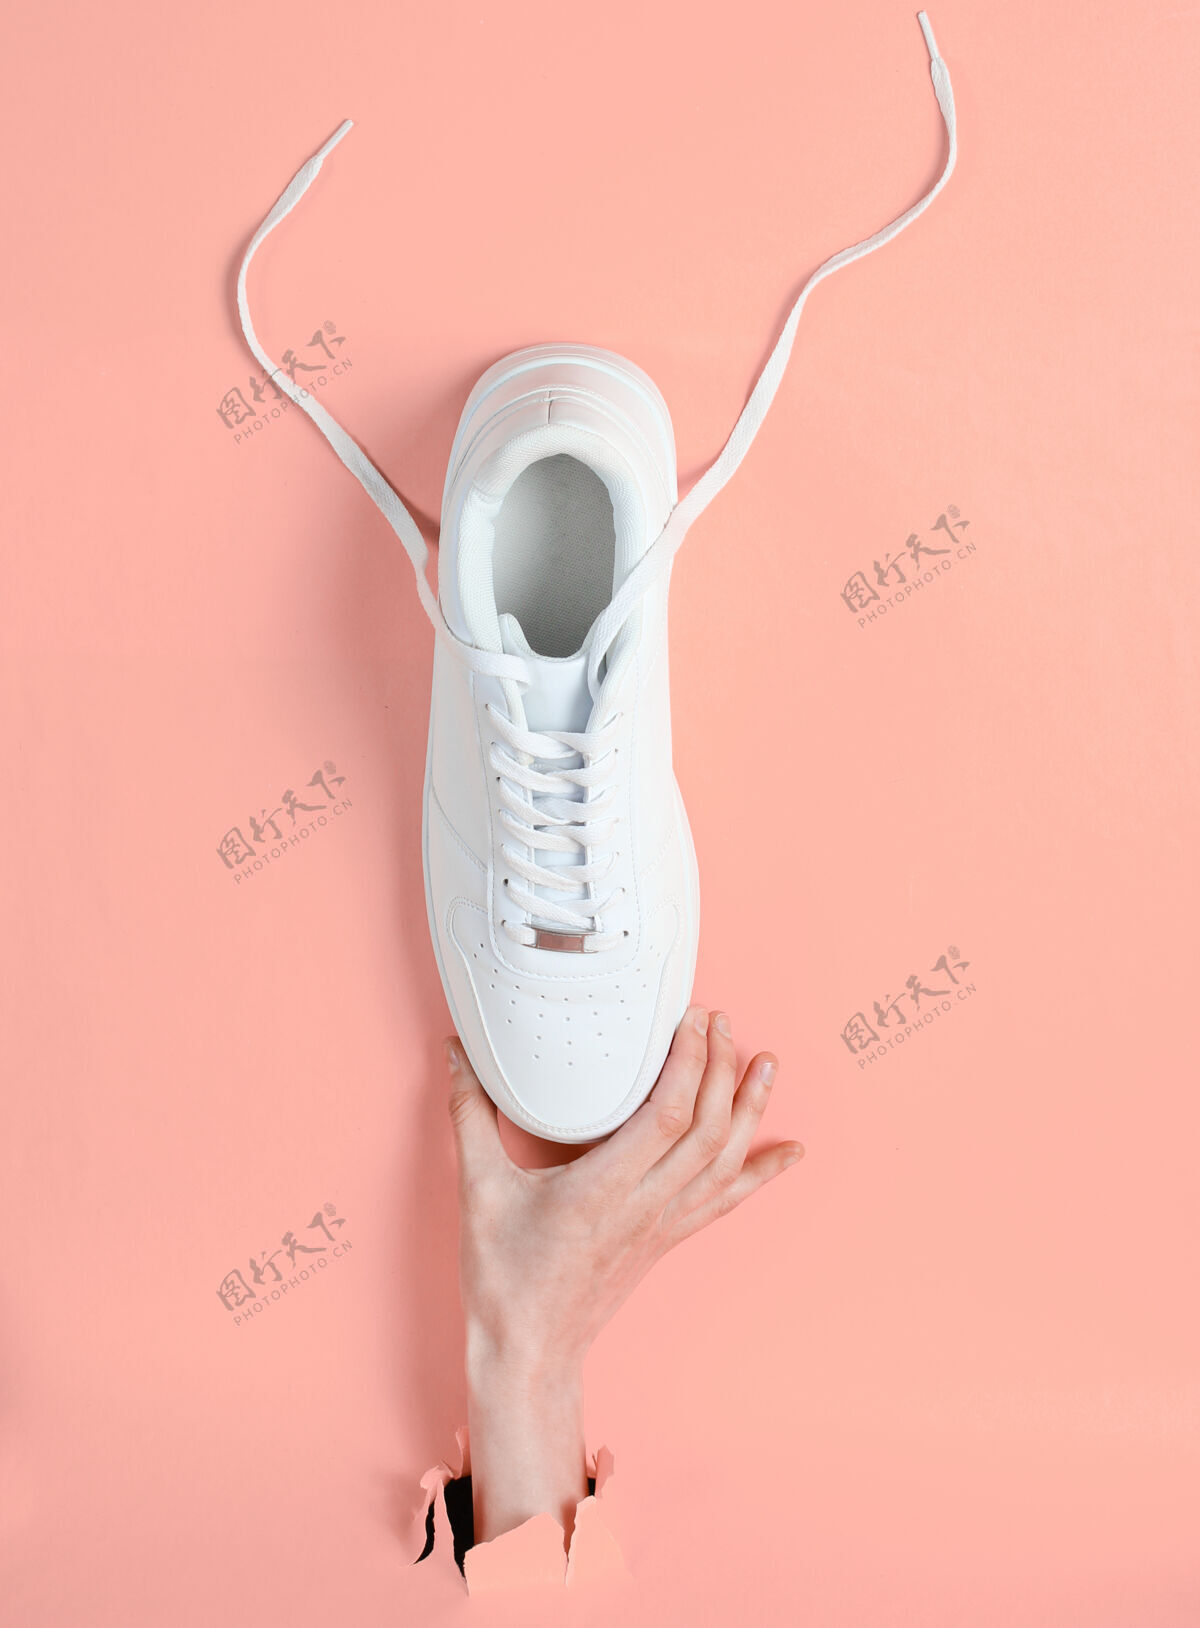 商店女性手拿白色运动鞋穿过撕破的粉色纸简约创意时尚理念青少年运动创意